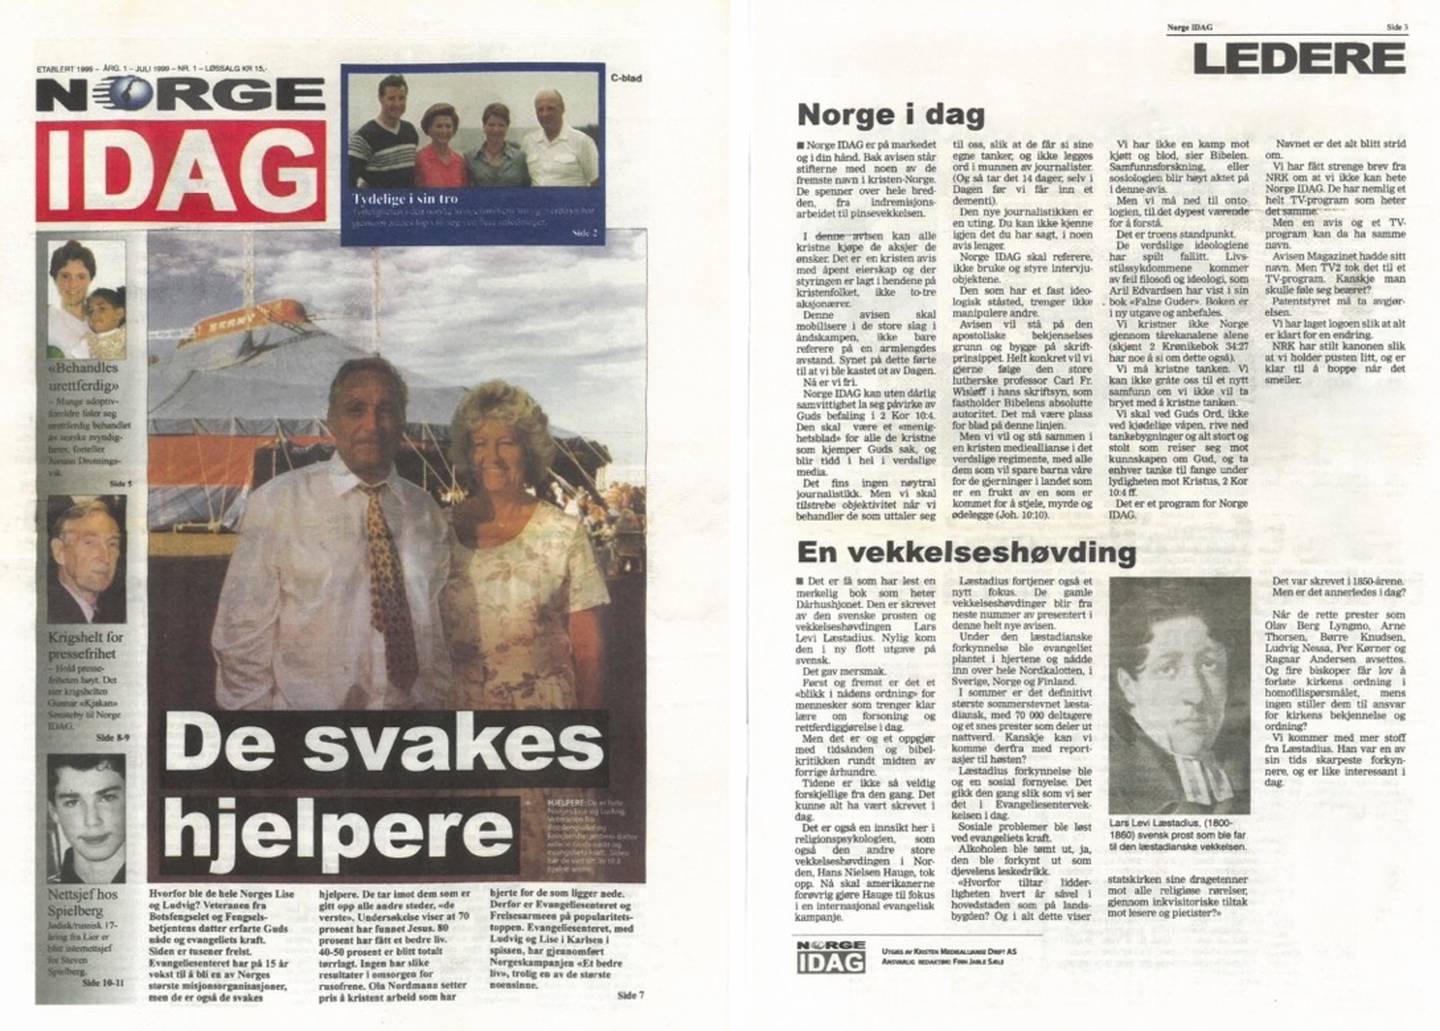 NY AVIS: Førsteutgaven av Norge Idag hadde ledere om avisa som grasrotprosjekt – og om Lars Levi Læstadius.